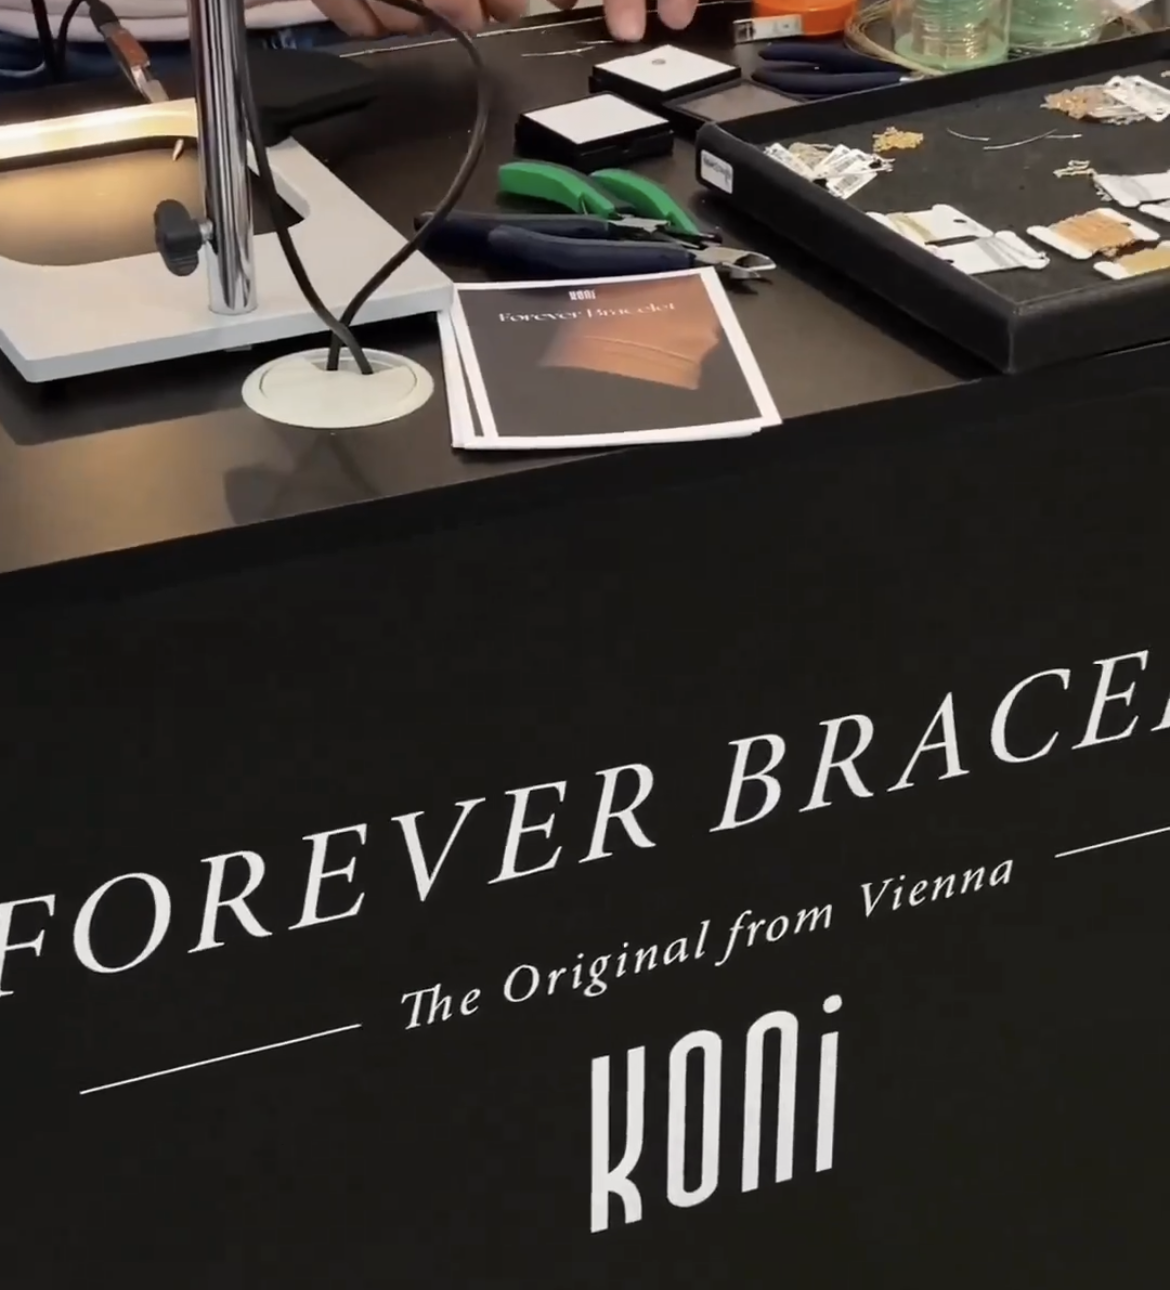 KONI_Forever Bracelet Event